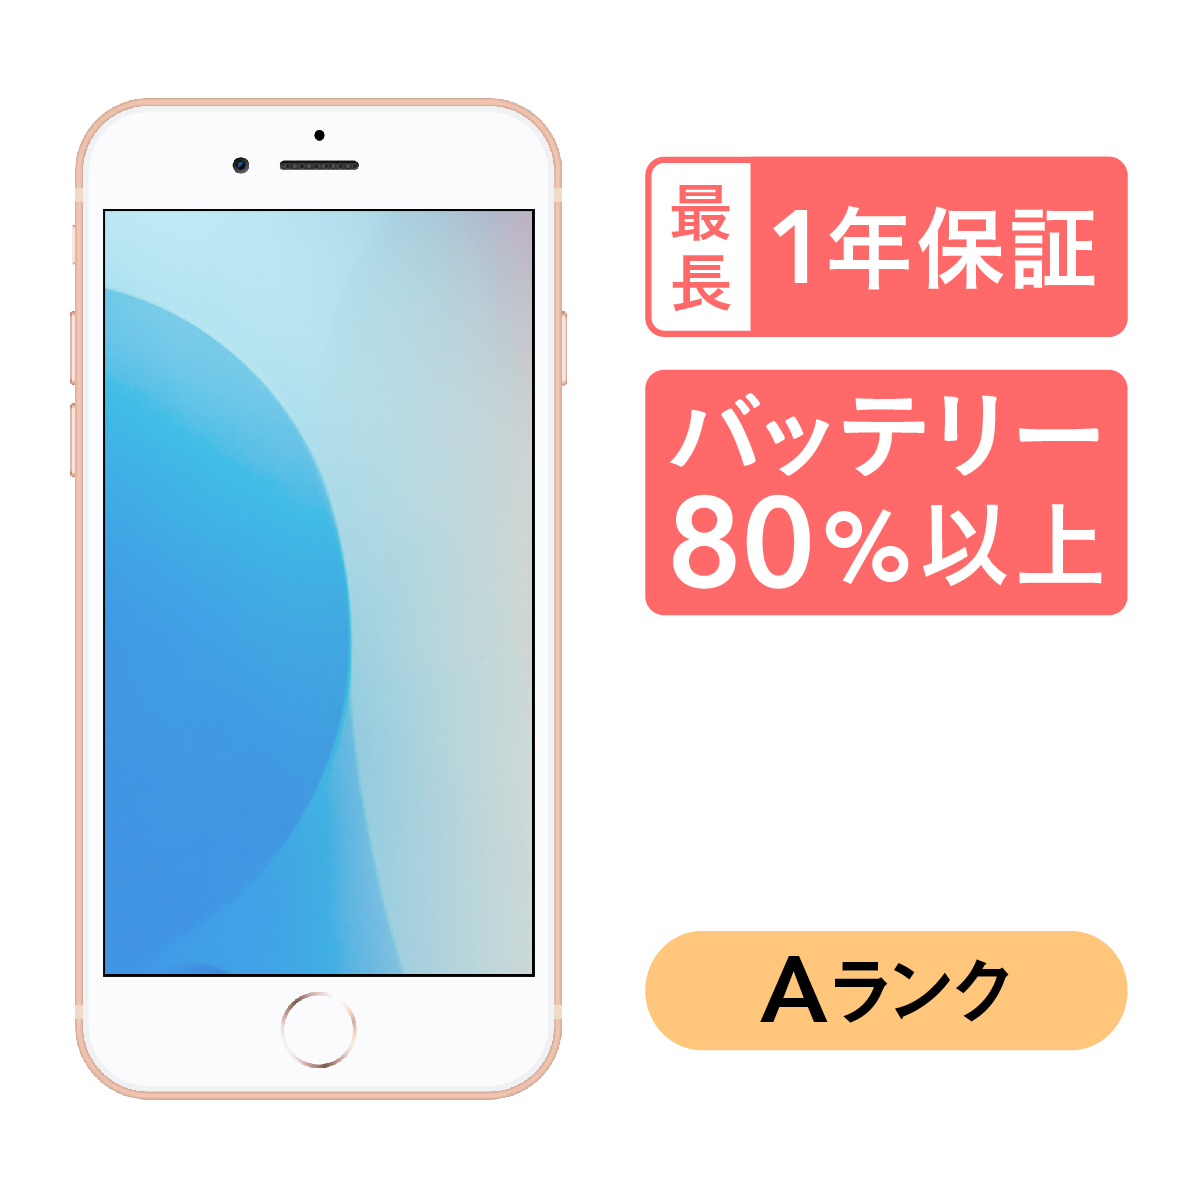 【史博物館】【バッテリ100%】 SoftBank iPhone 8 Plus 64gb スマートフォン本体